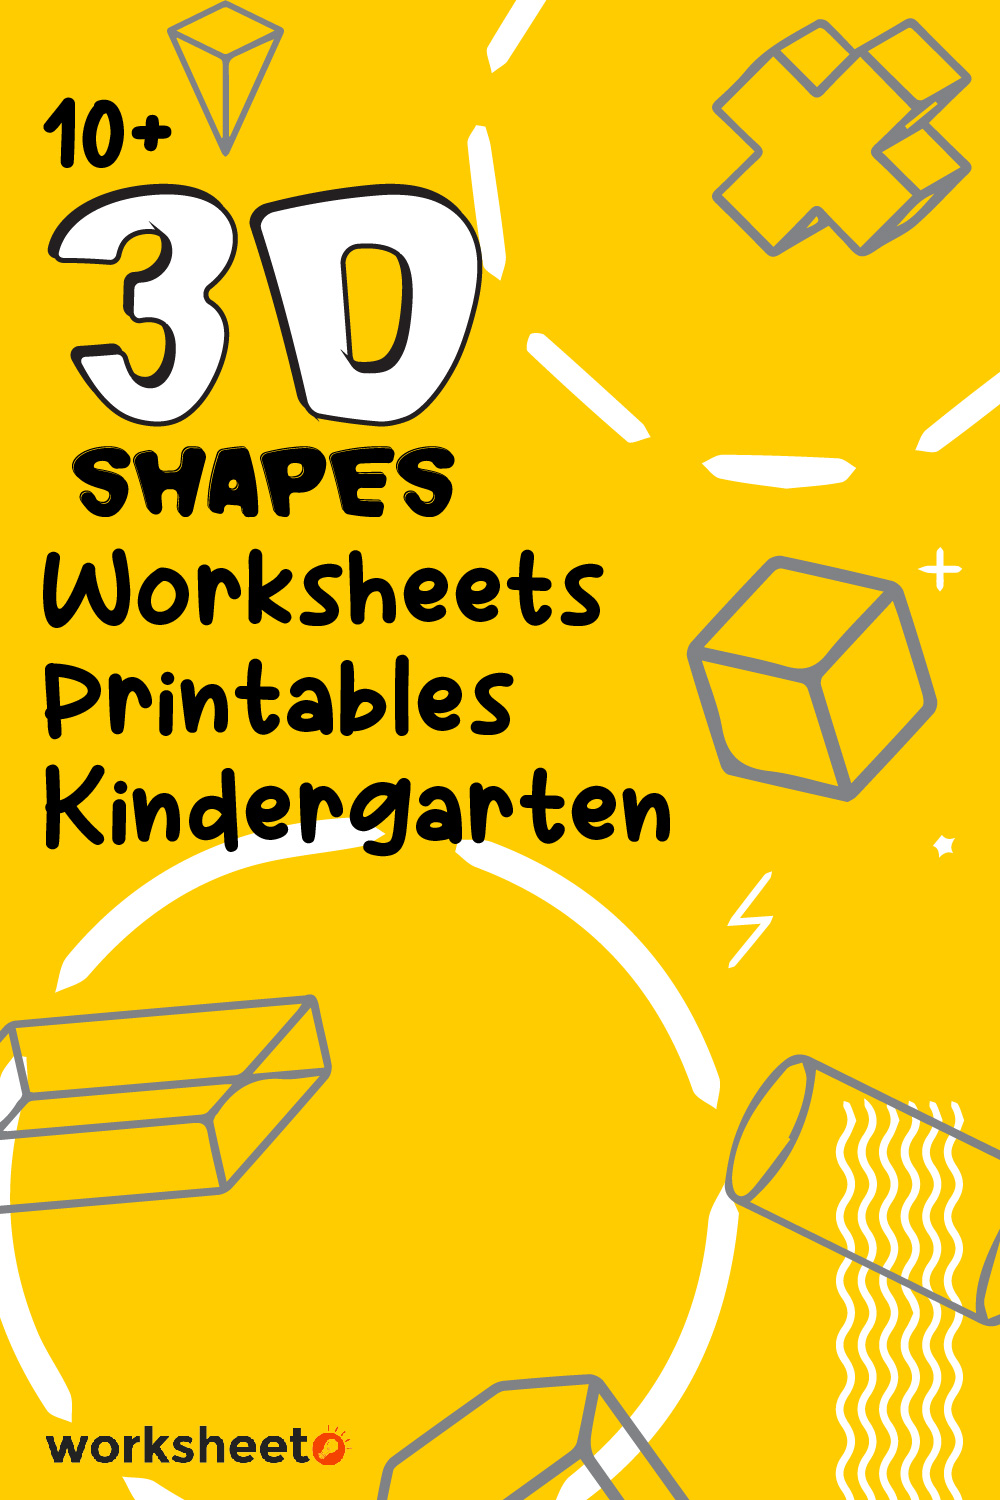 3D Shapes Worksheets Printables Kindergarten